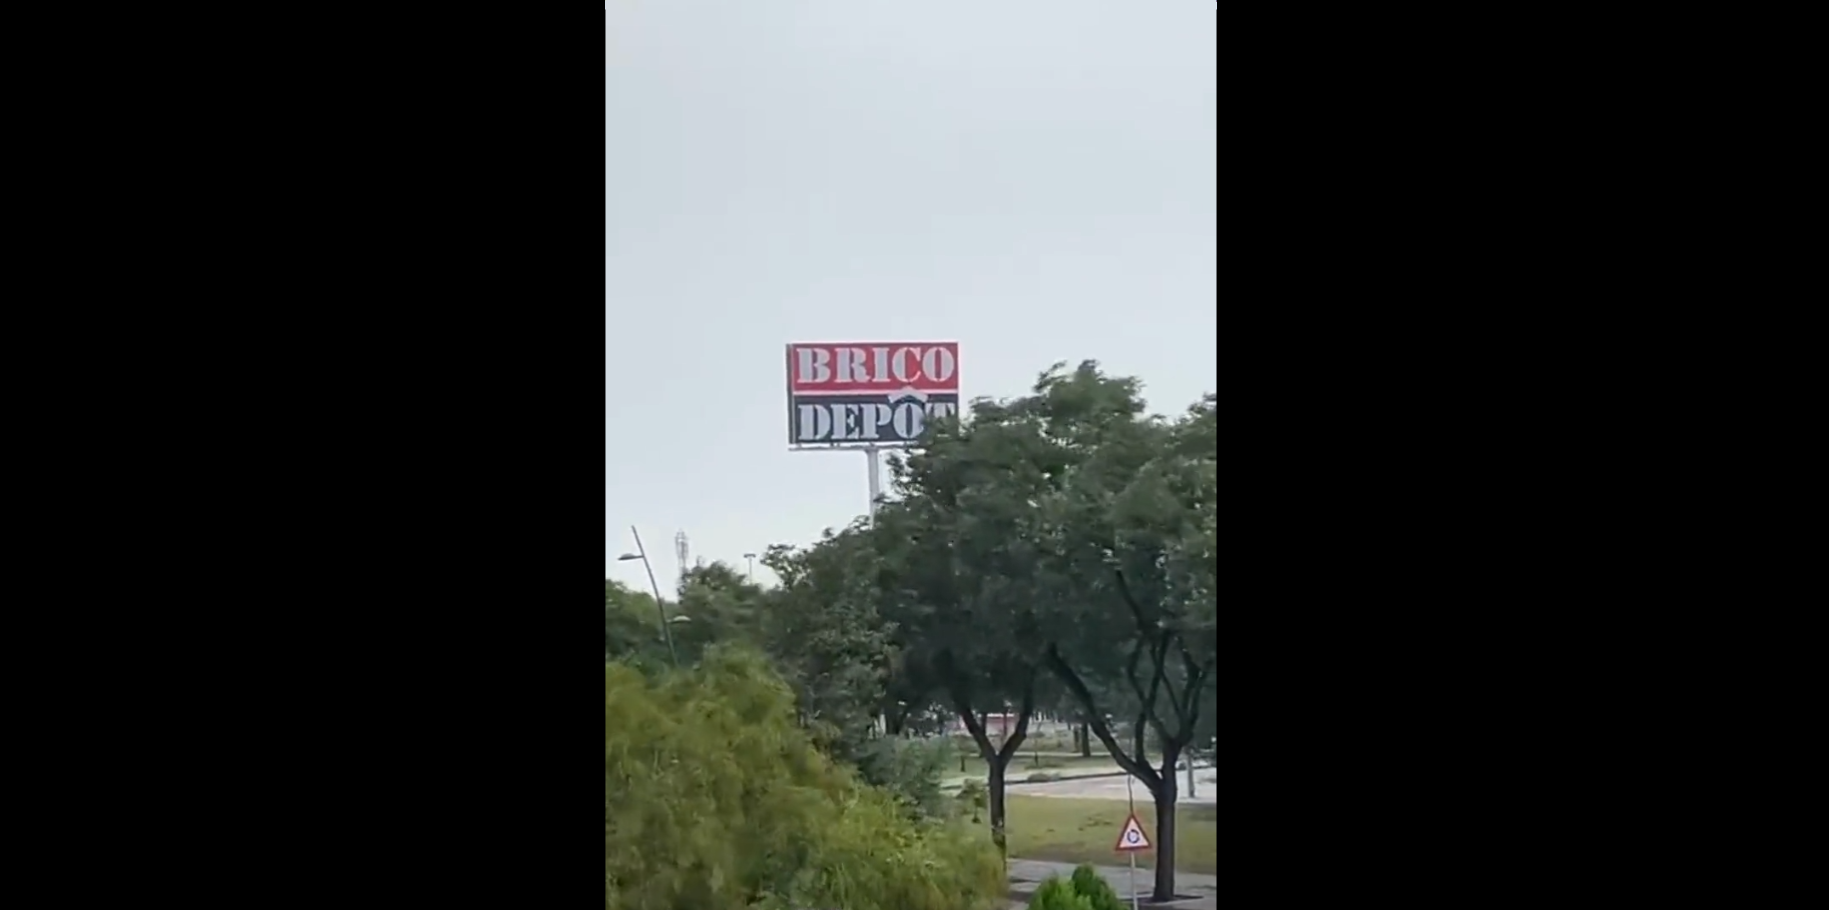 El cartel de BricoDepot que ha caído en Jerez.